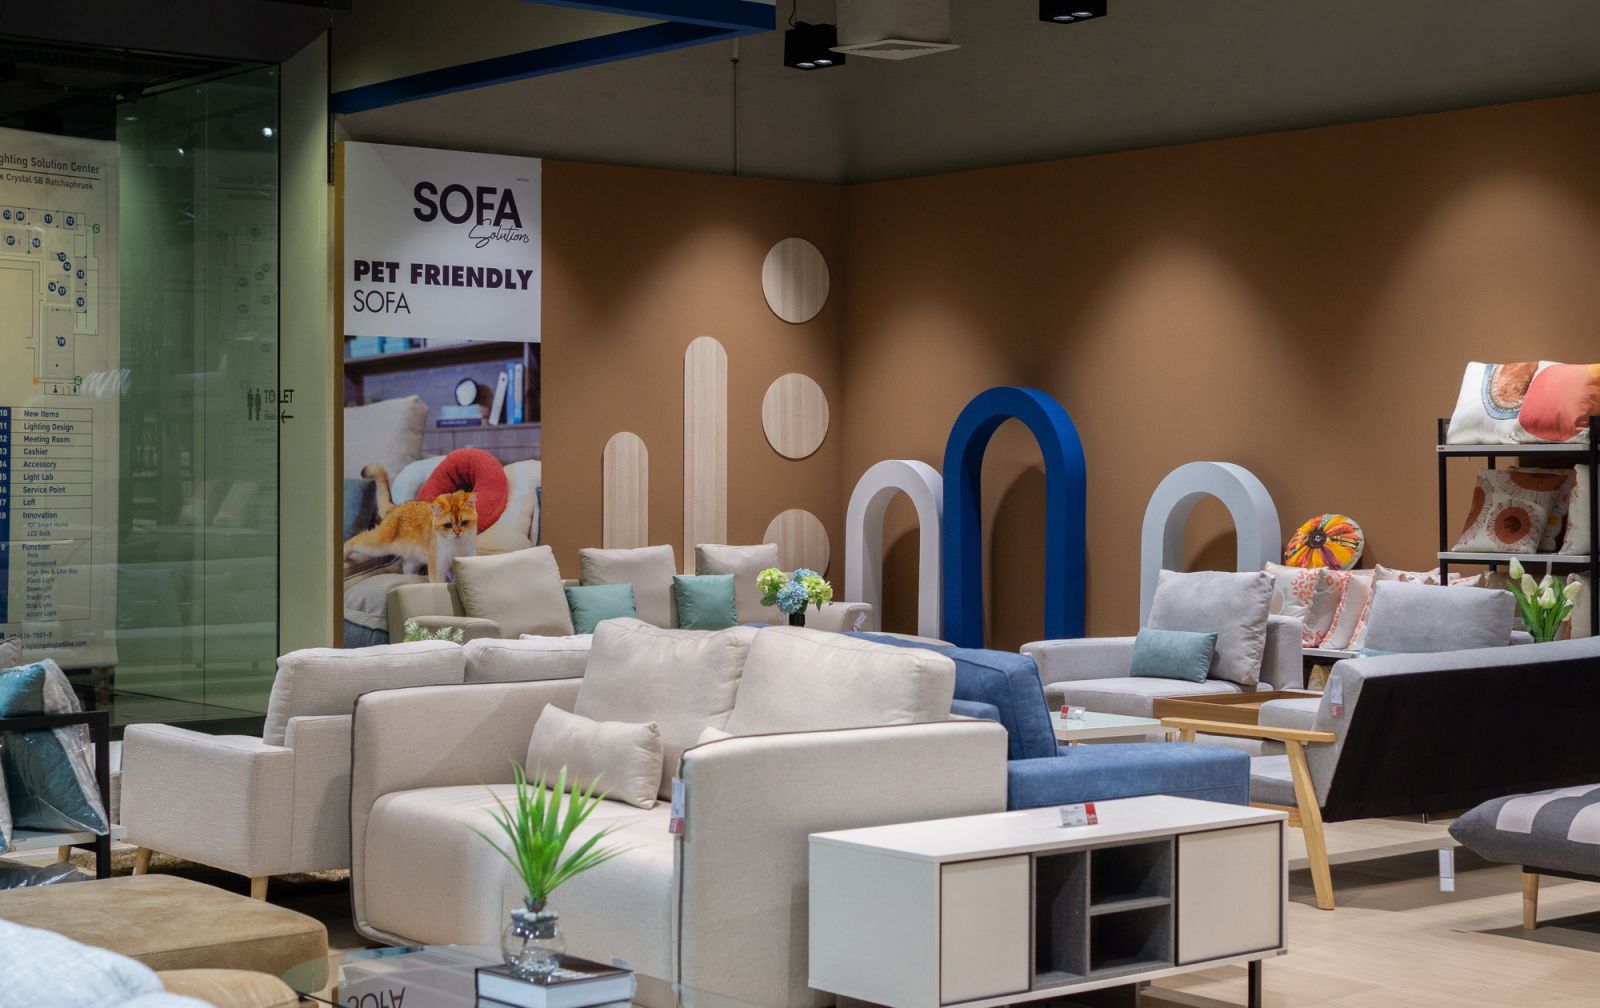 เอสบี ดีไซน์สแควร์ เปิดโซนใหม่ “Sofa Solutions” Destination ของศูนย์รวมโซฟาแห่งแรกที่มีให้เลือกมากกว่า 500 แบบ